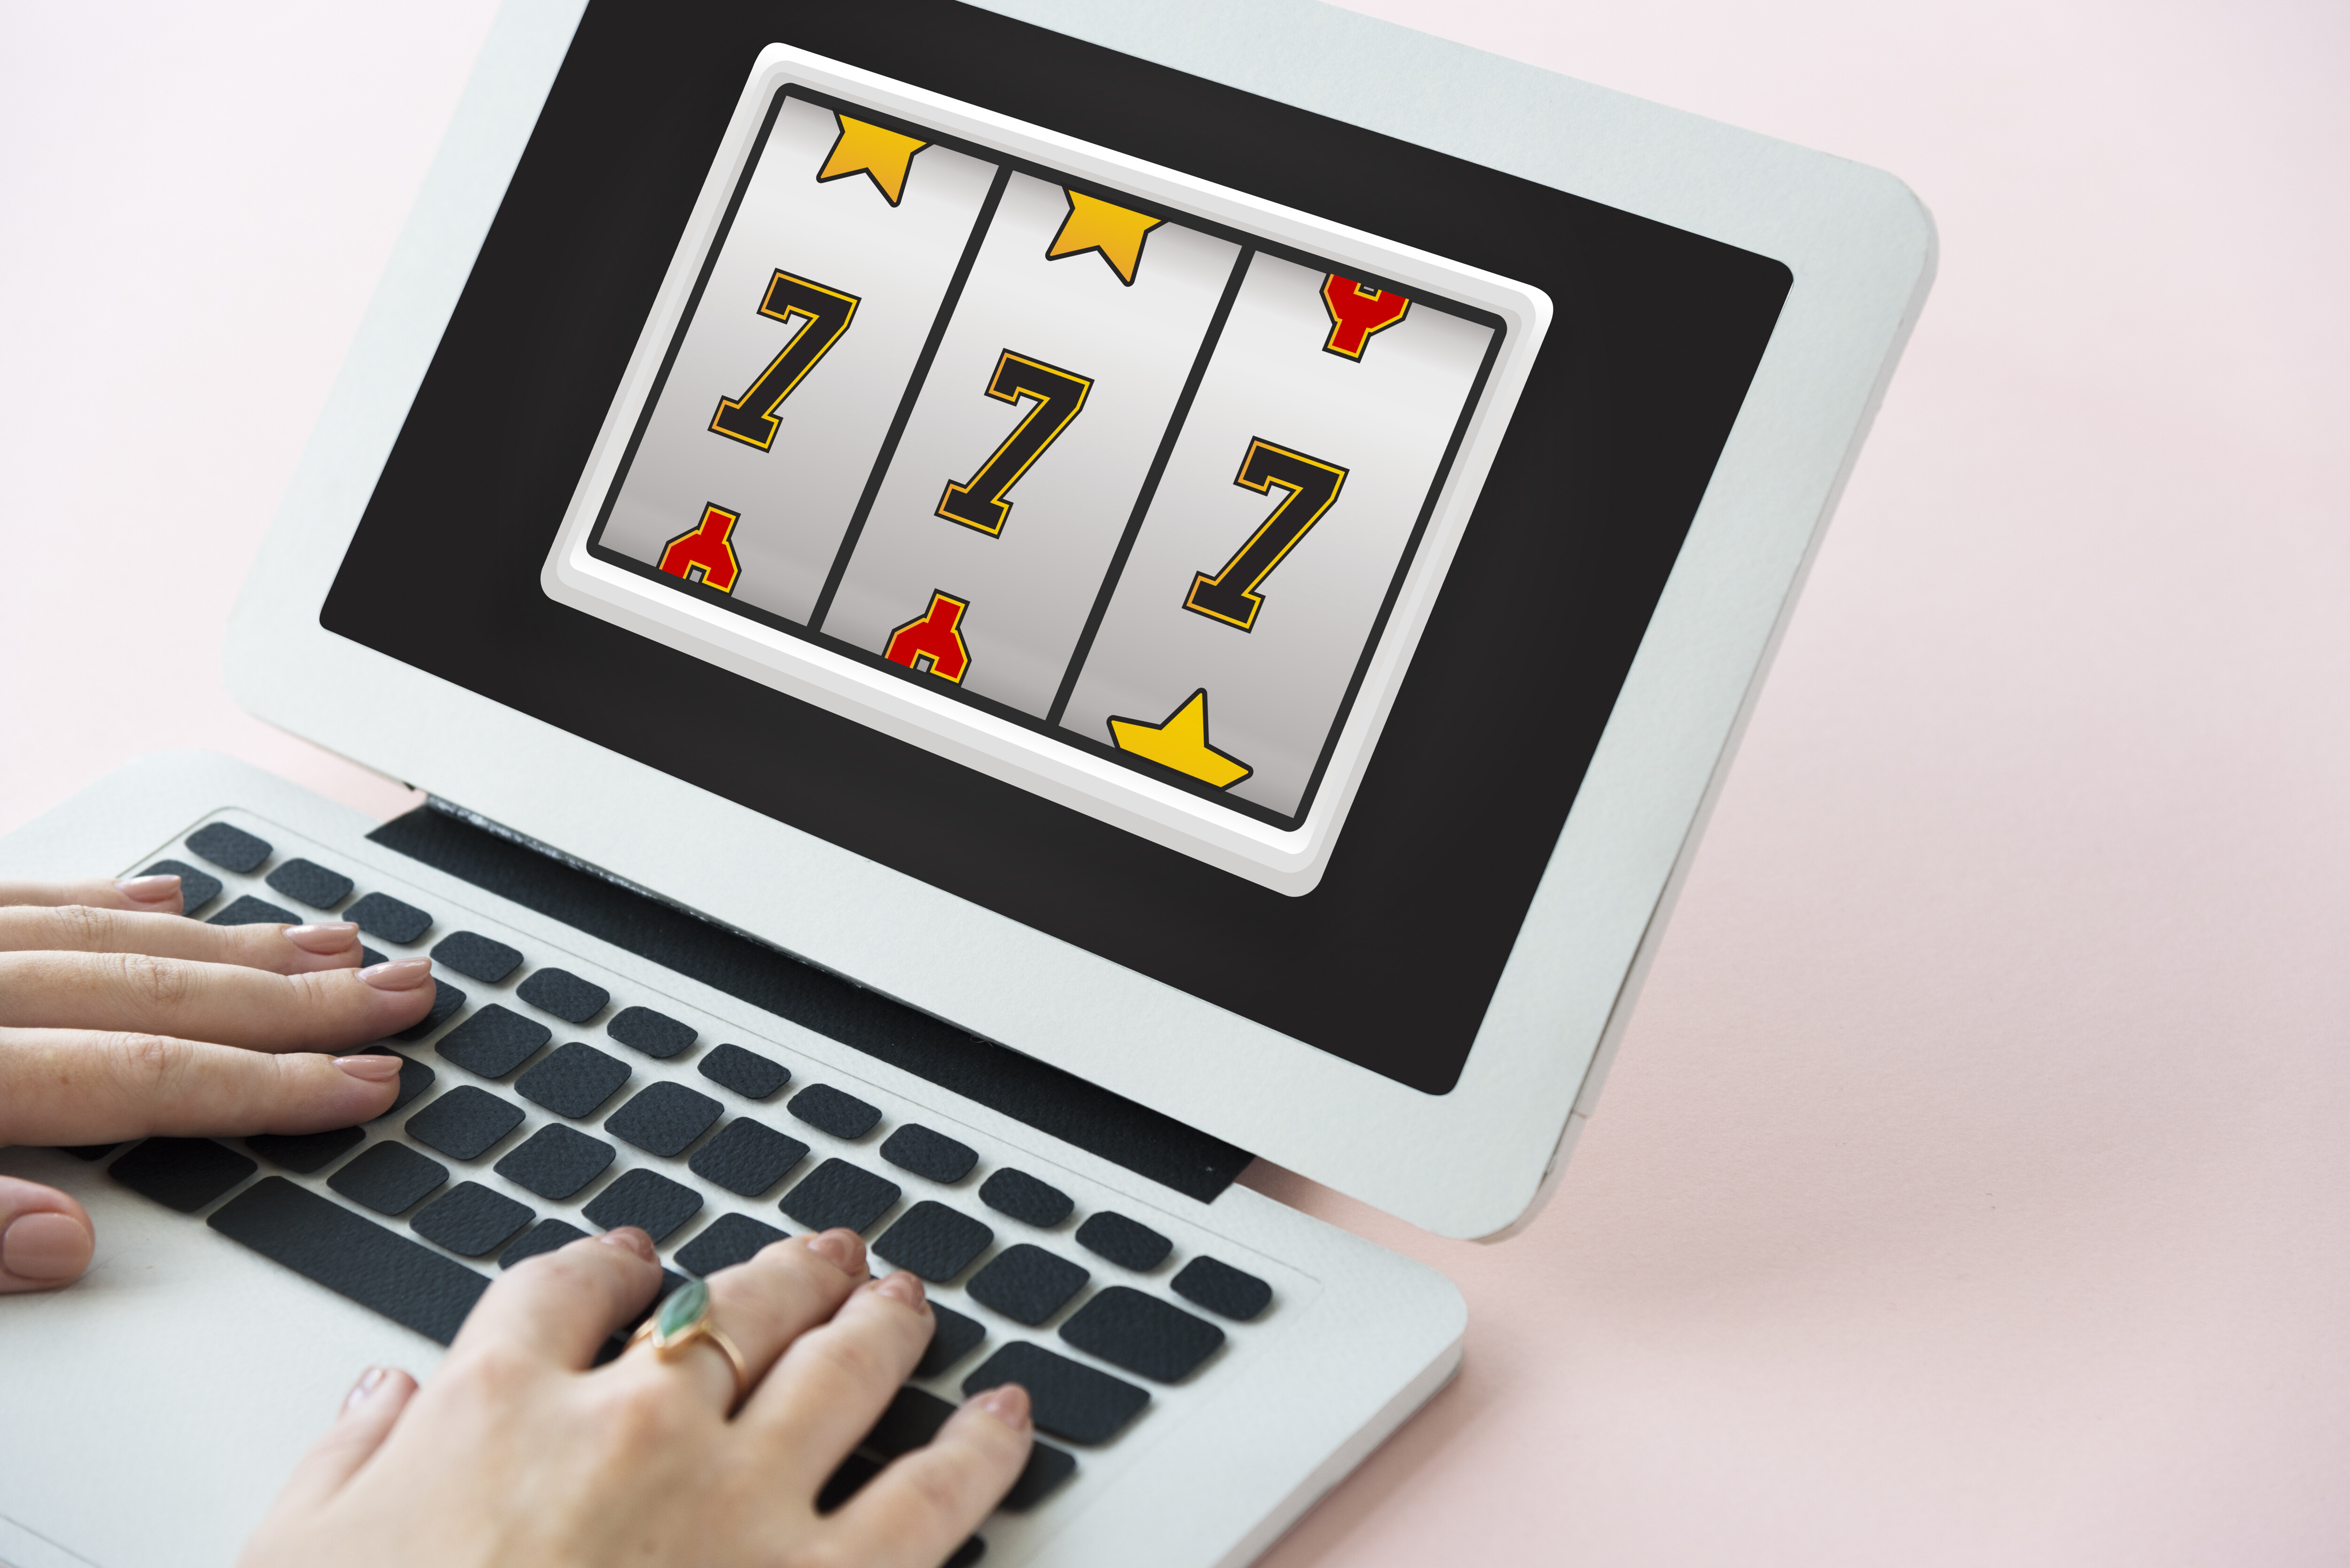 22 wskazówki, jak zacząć budować internetowe kasyno, którego zawsze chciałeś